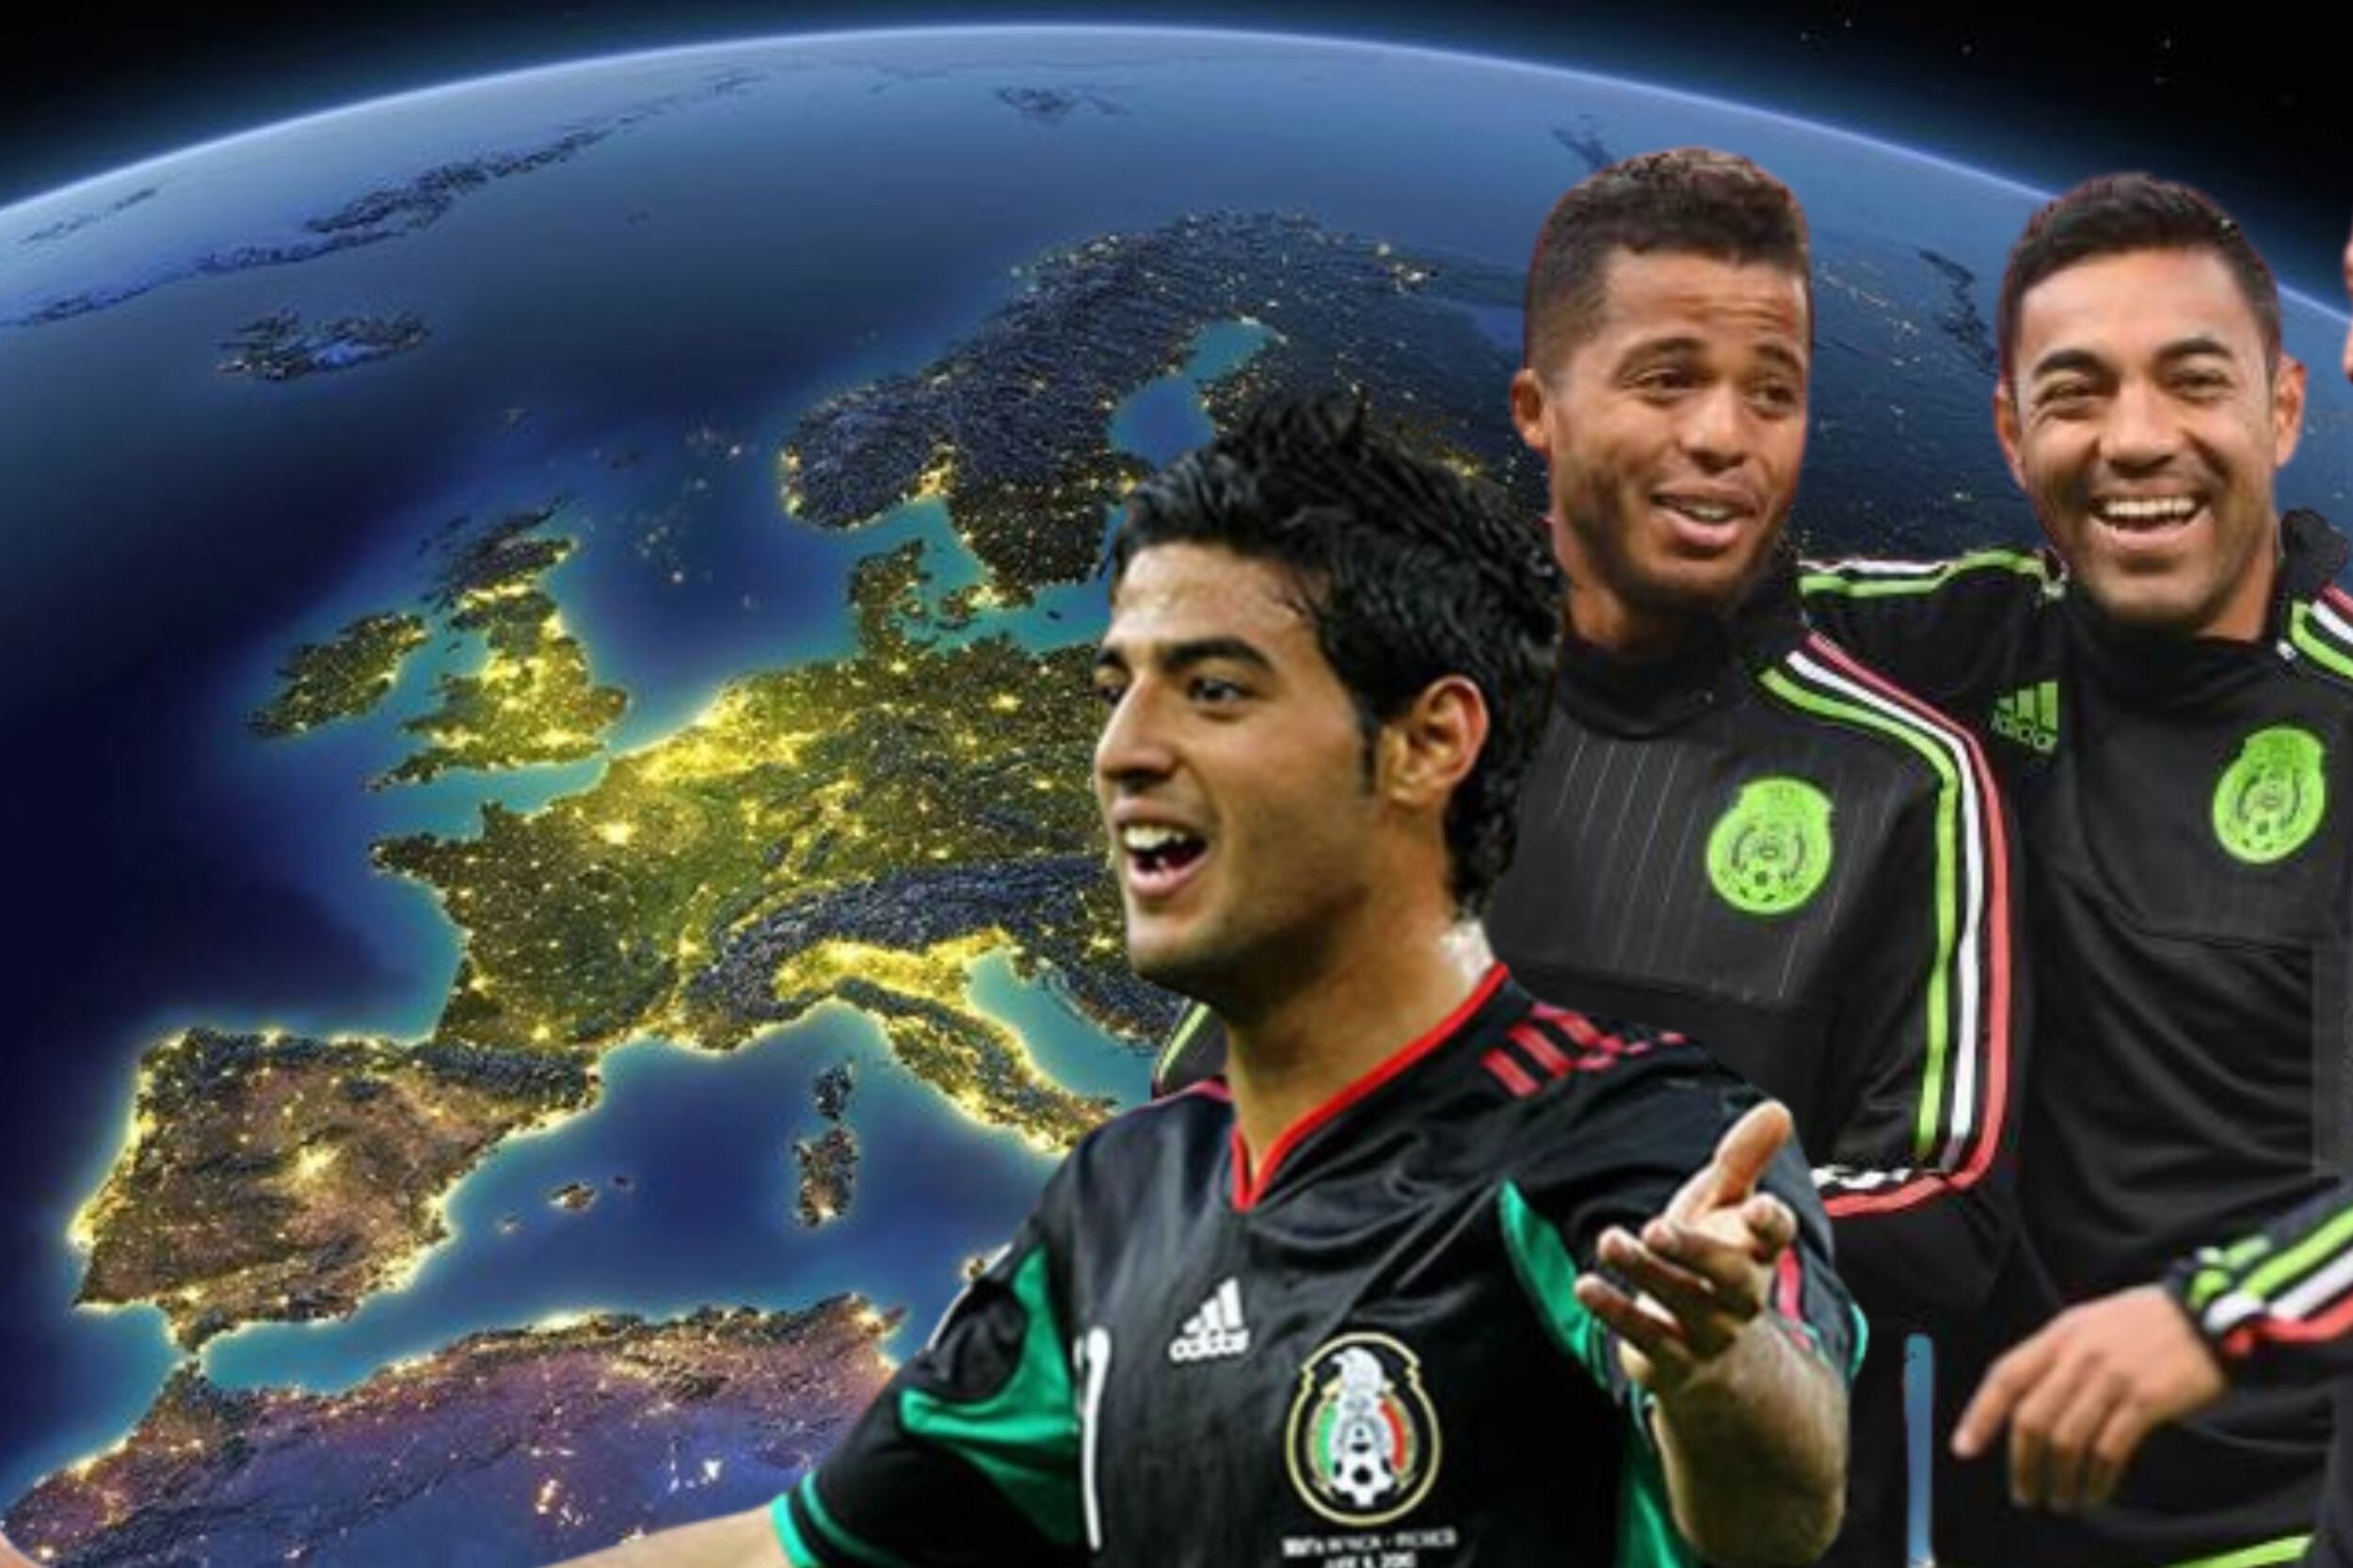 El 1er jugador mexicano que tiene a cargo un equipo profesional en Europa, es su presidente